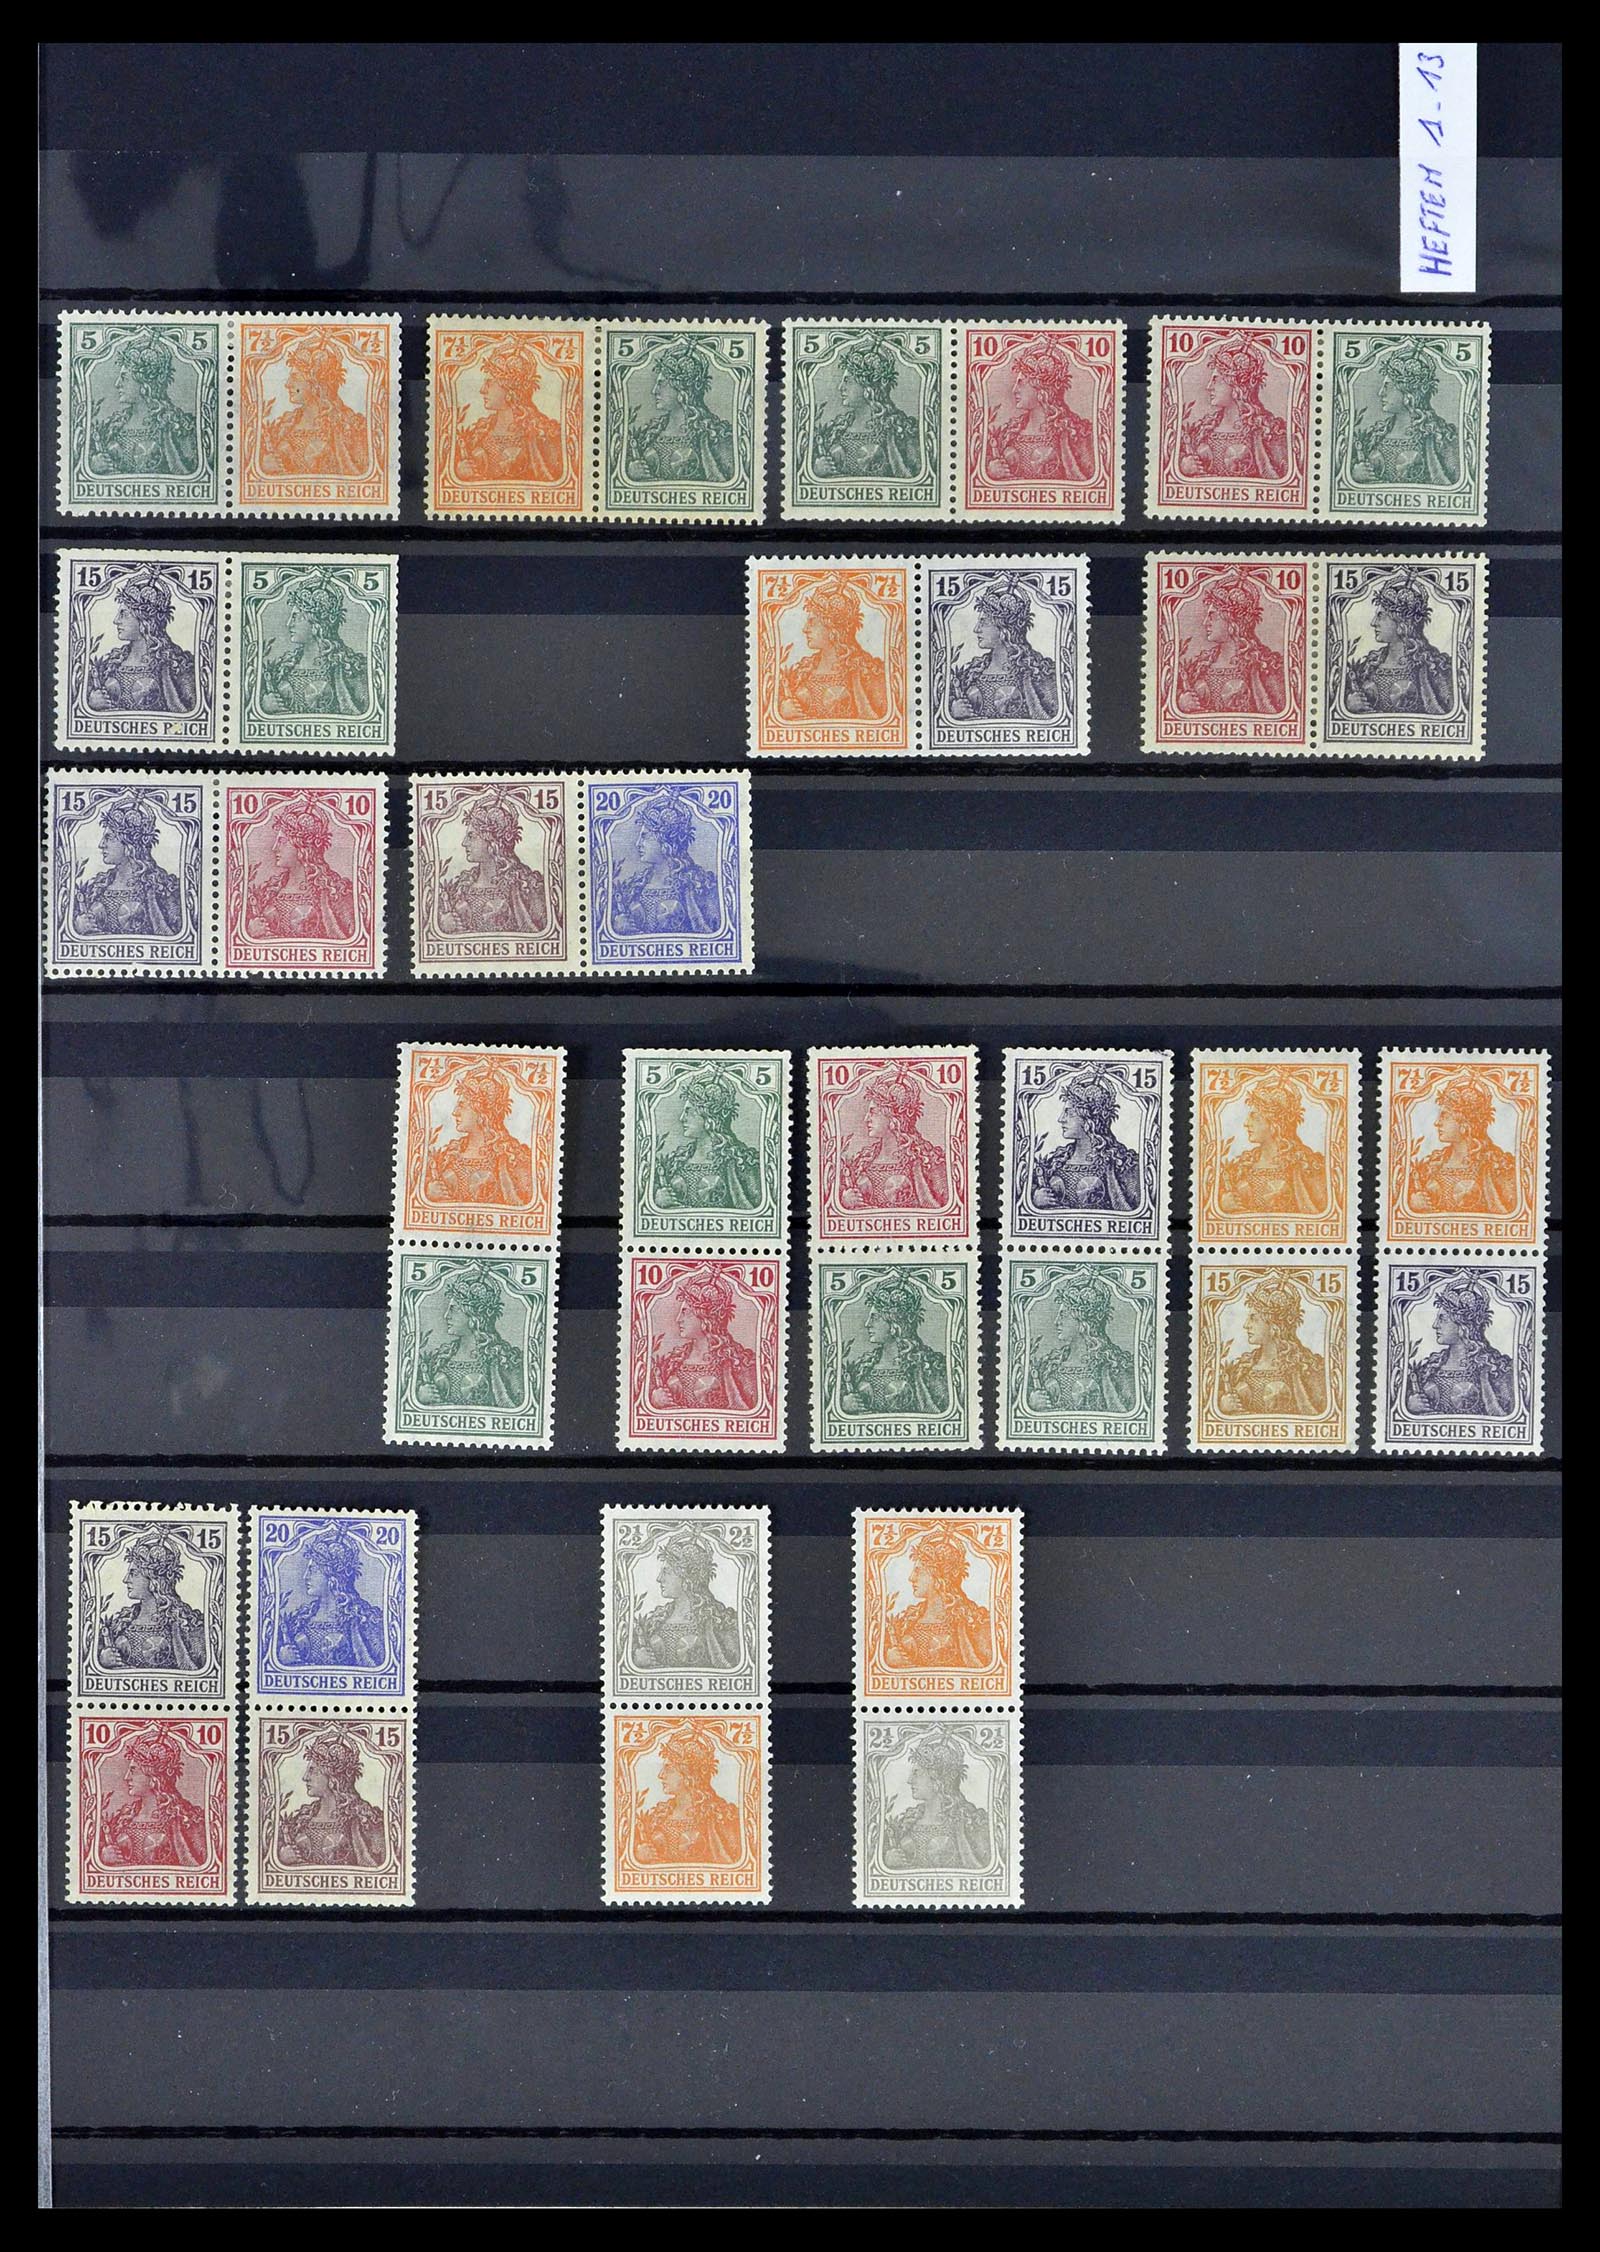 39311 0001 - Postzegelverzameling 39311 Duitse Rijk combinaties 1910-1941.